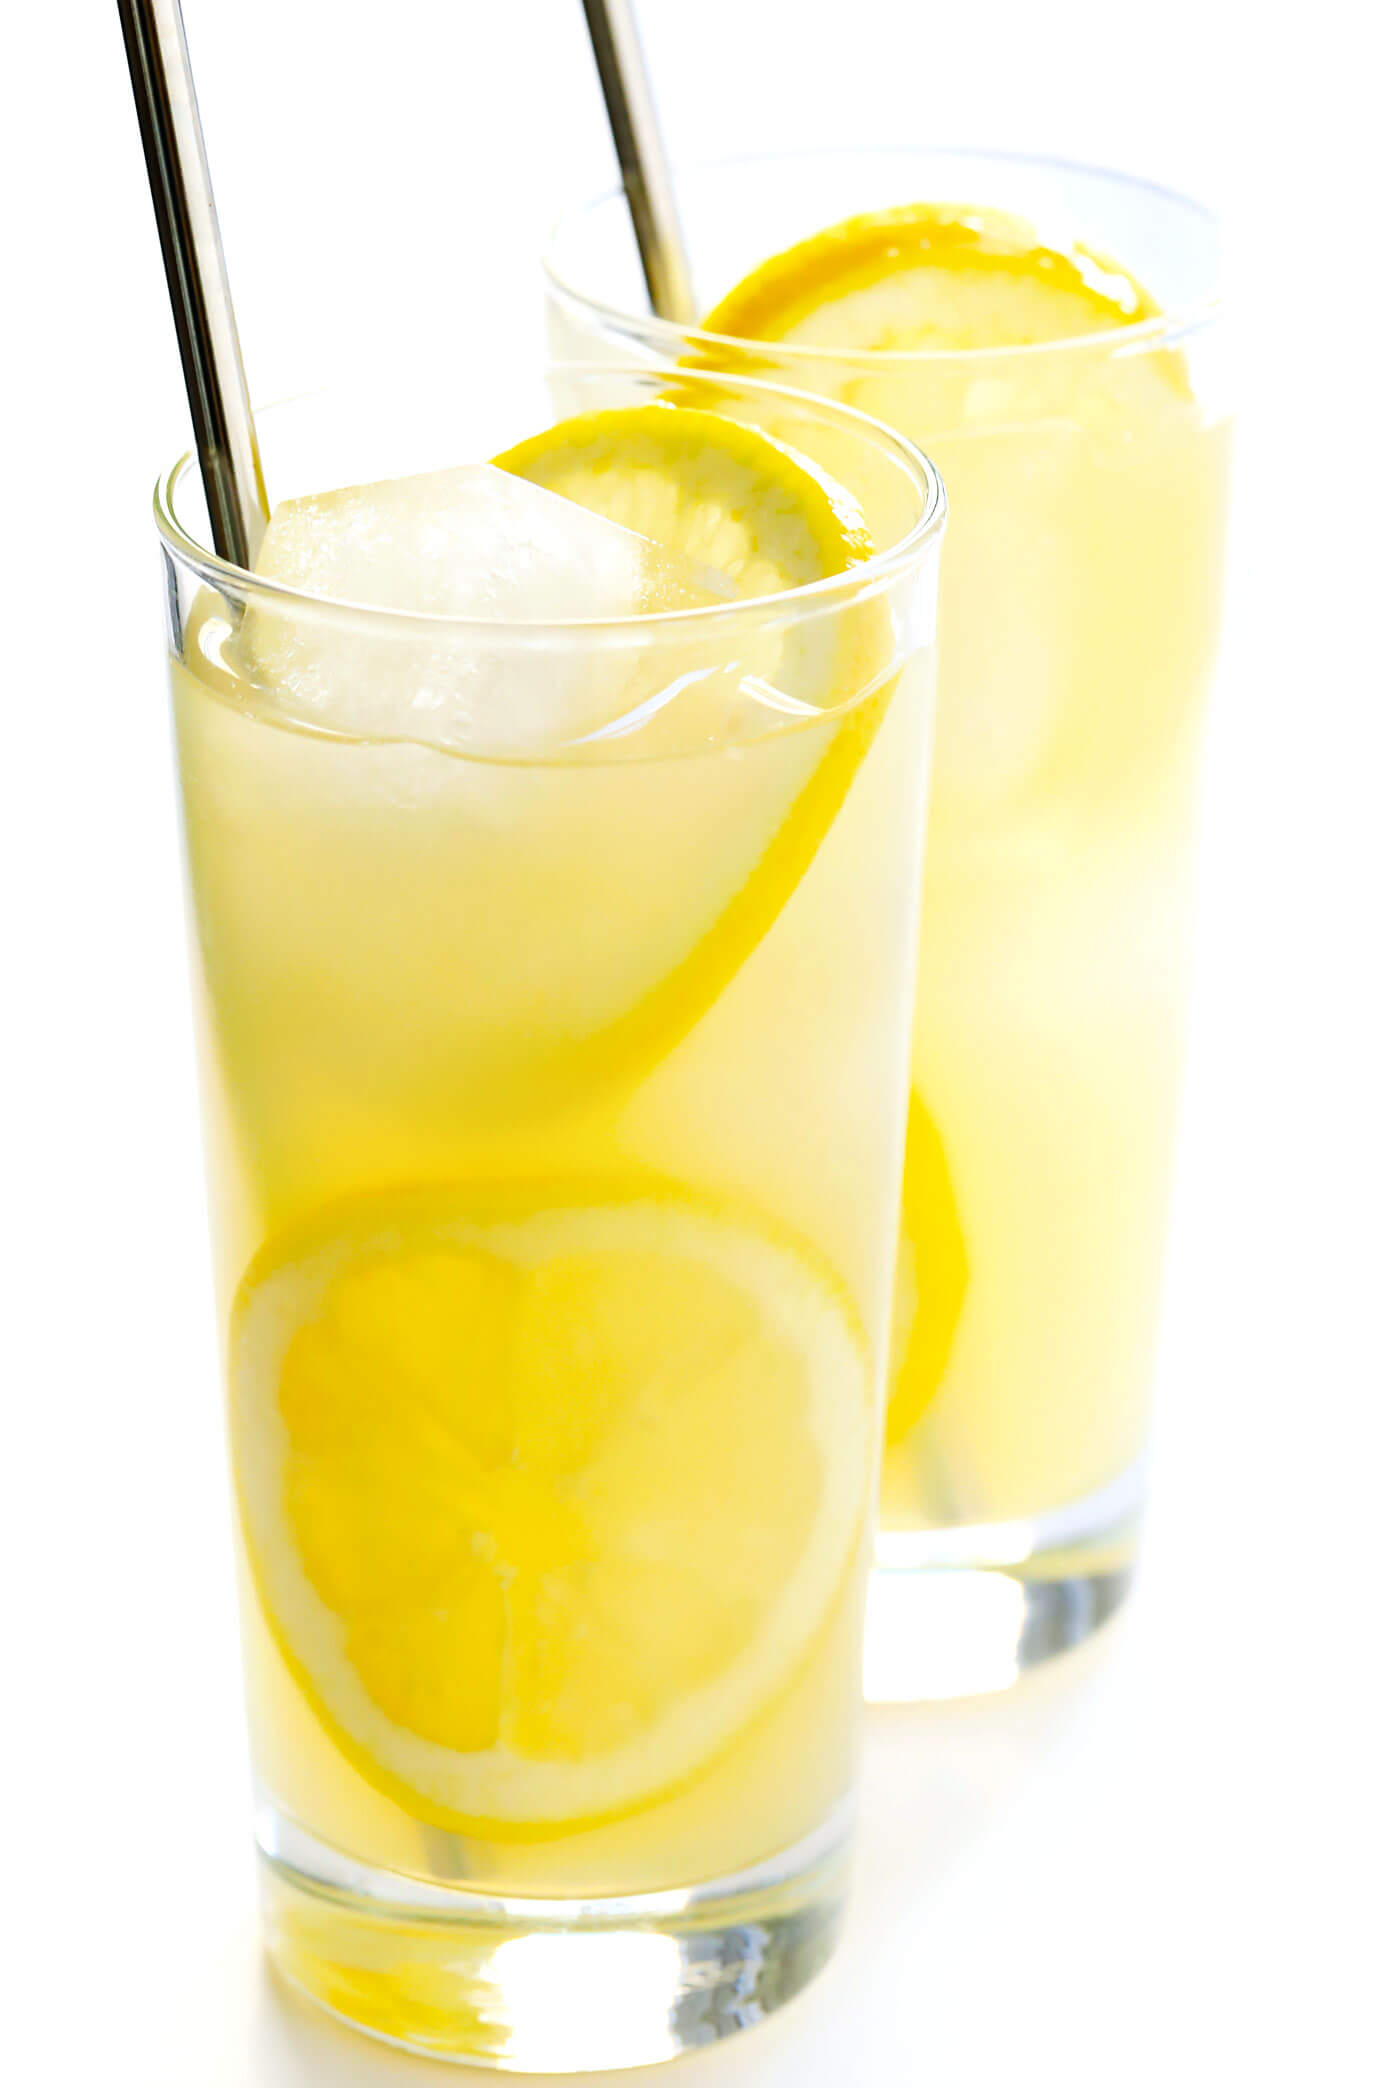 最好的3种成分自制柠檬水配方 - 天然加糖，用枫糖浆或蜂蜜甜，易于制作5分钟！|gimmesomeoven.com #lemonade #drink #summer #juice